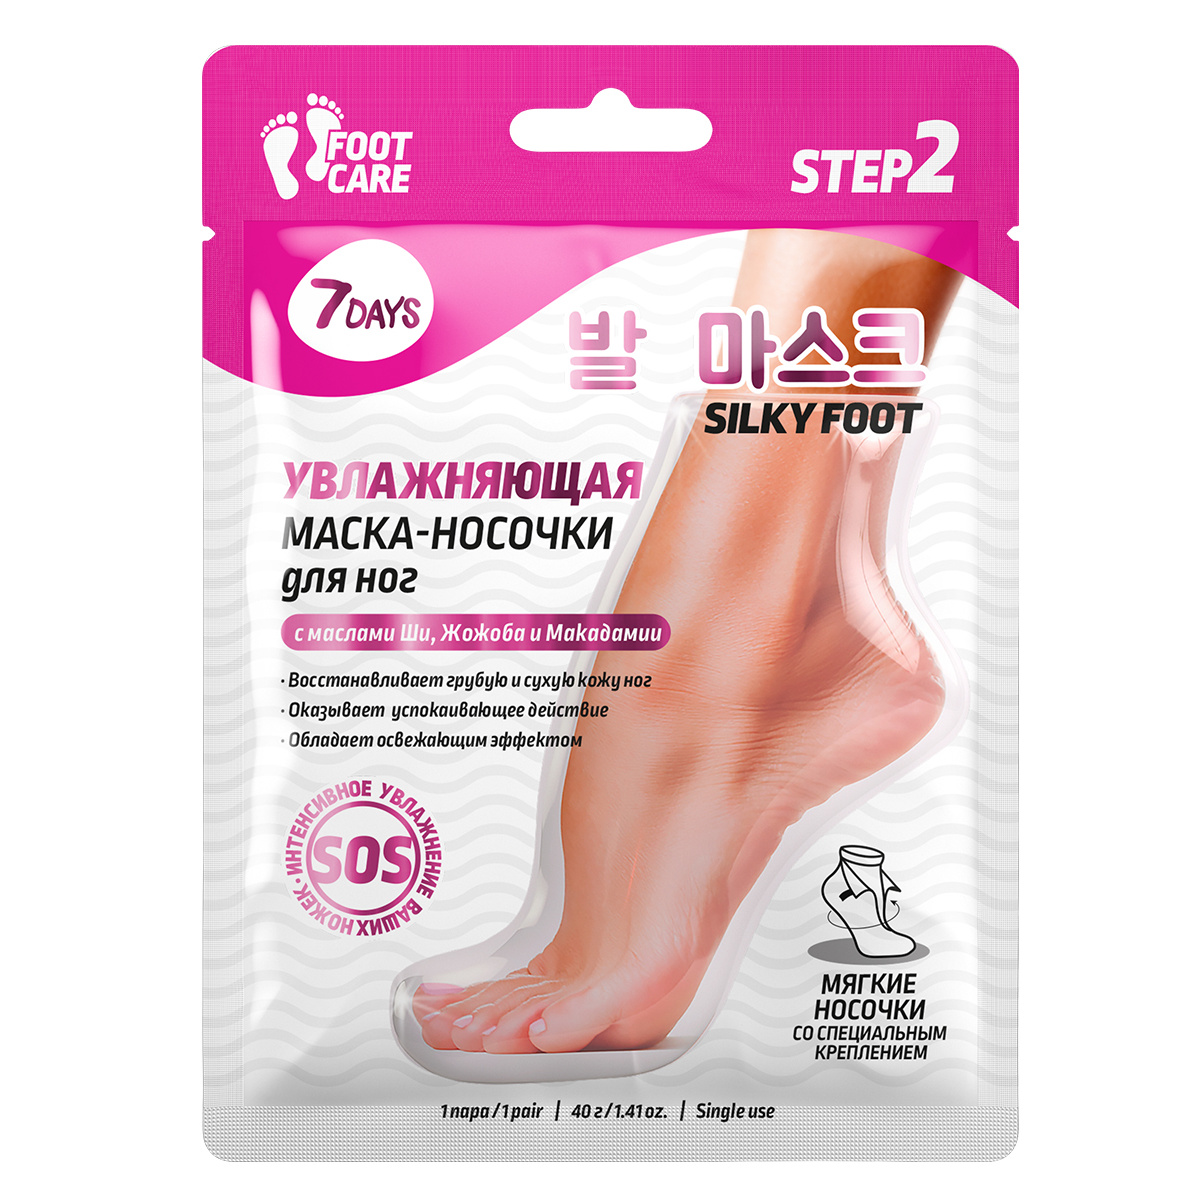 Маска-носочки для ног 7 Days Foot care увлажняющие и восстанавливающие 40 г